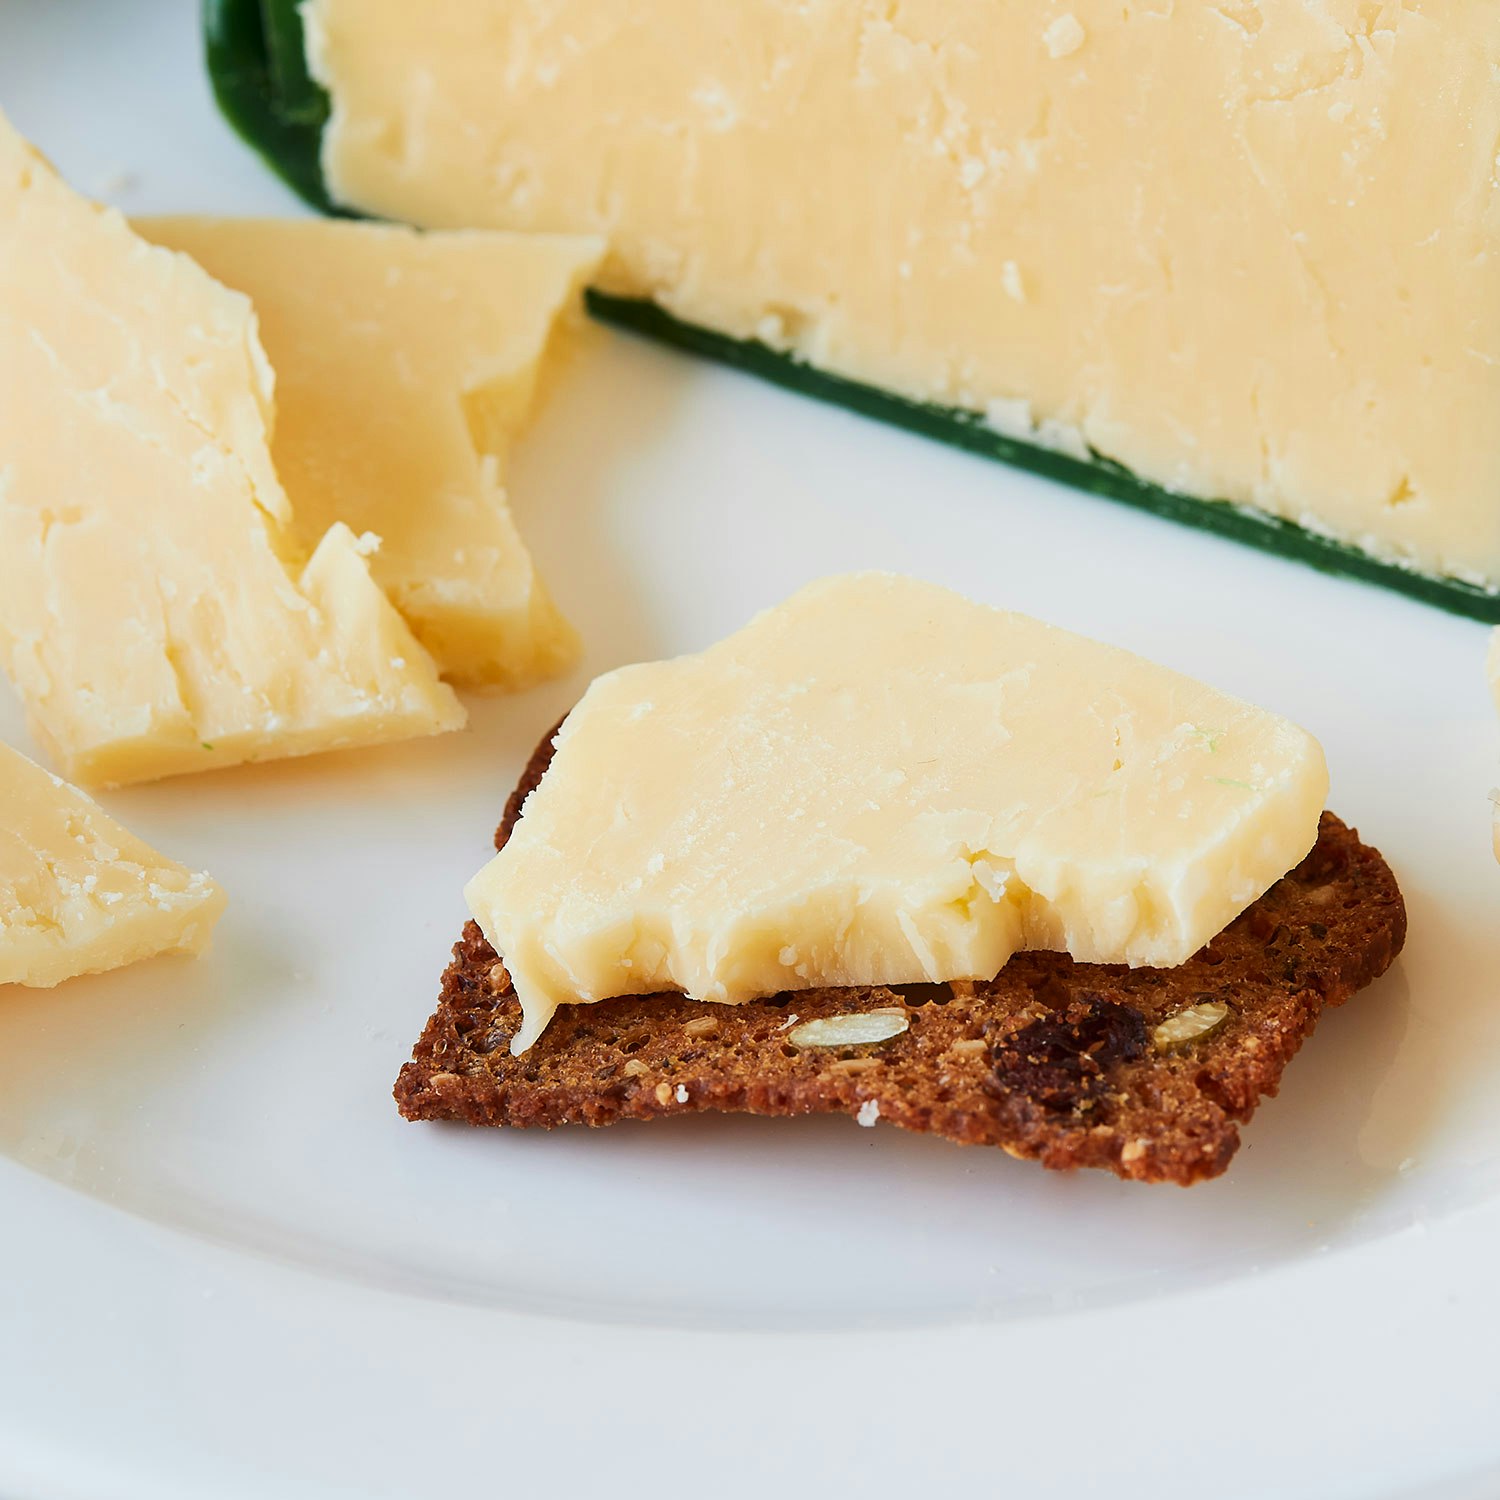 murrays irish cheddar cheese